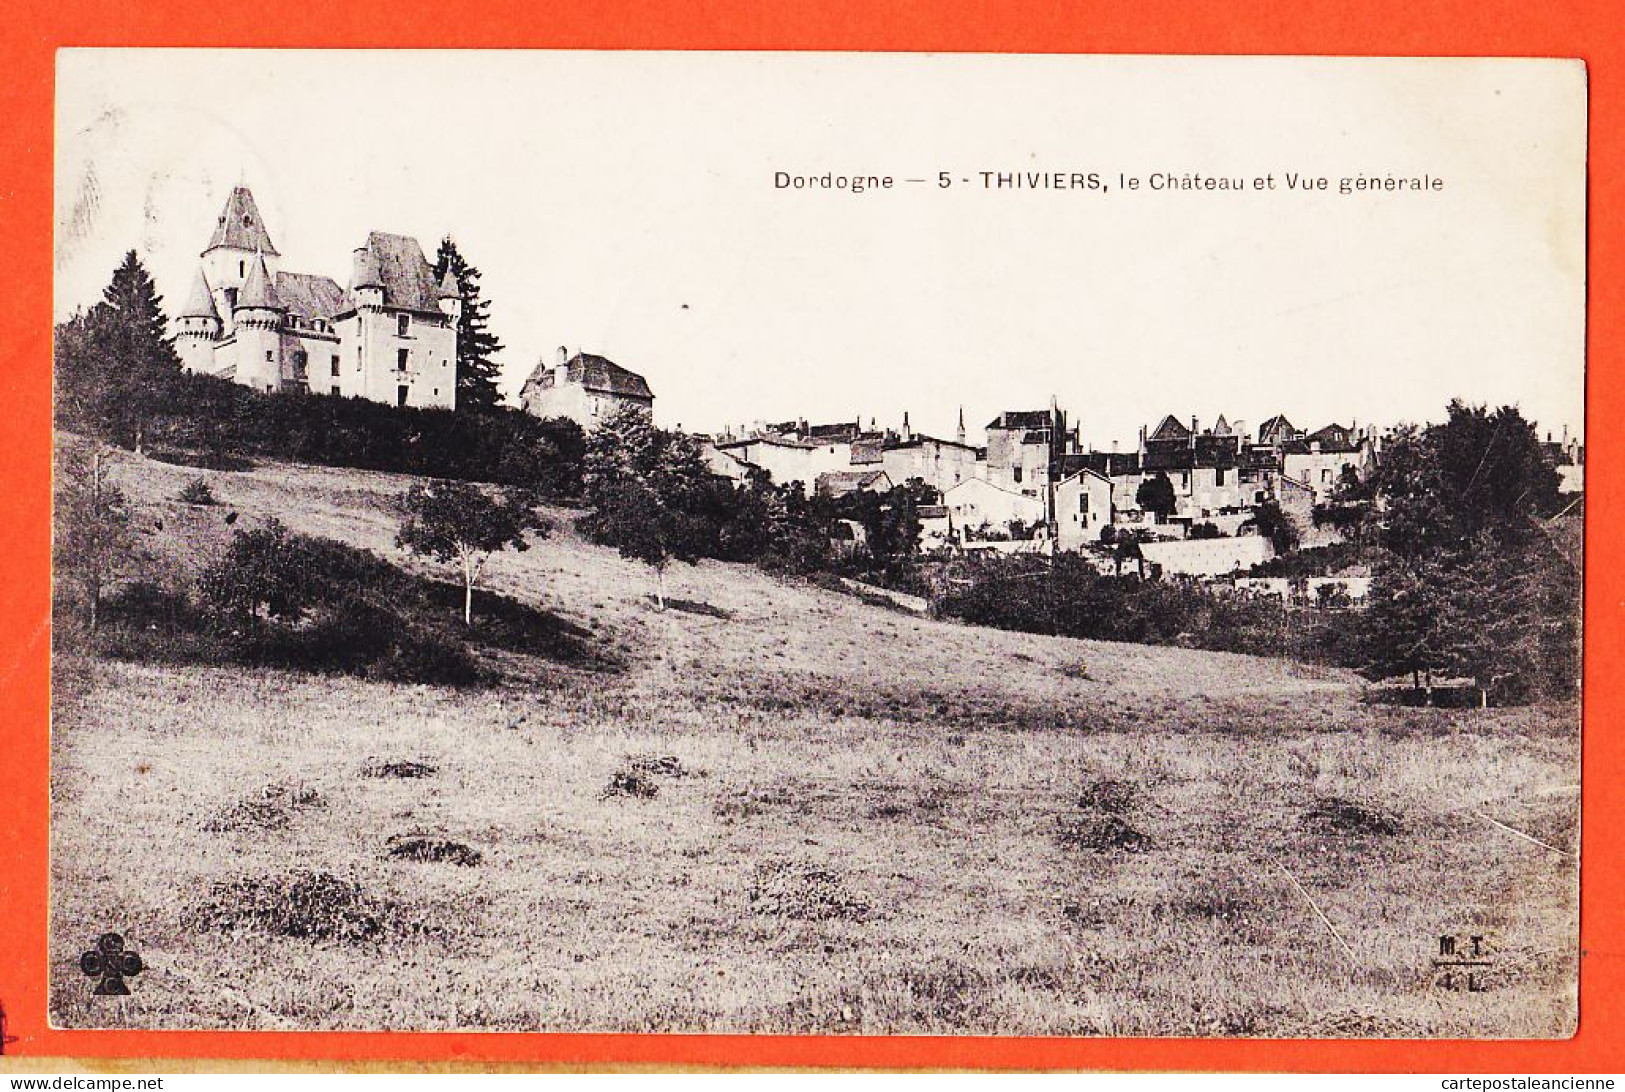 01209 / THIVIERS 24-Dordogne Chateau Vue Générale 1906 BOUTET Facteur Postes Villégiature GARIDOU Port-Vendres M.T.I.L - Thiviers